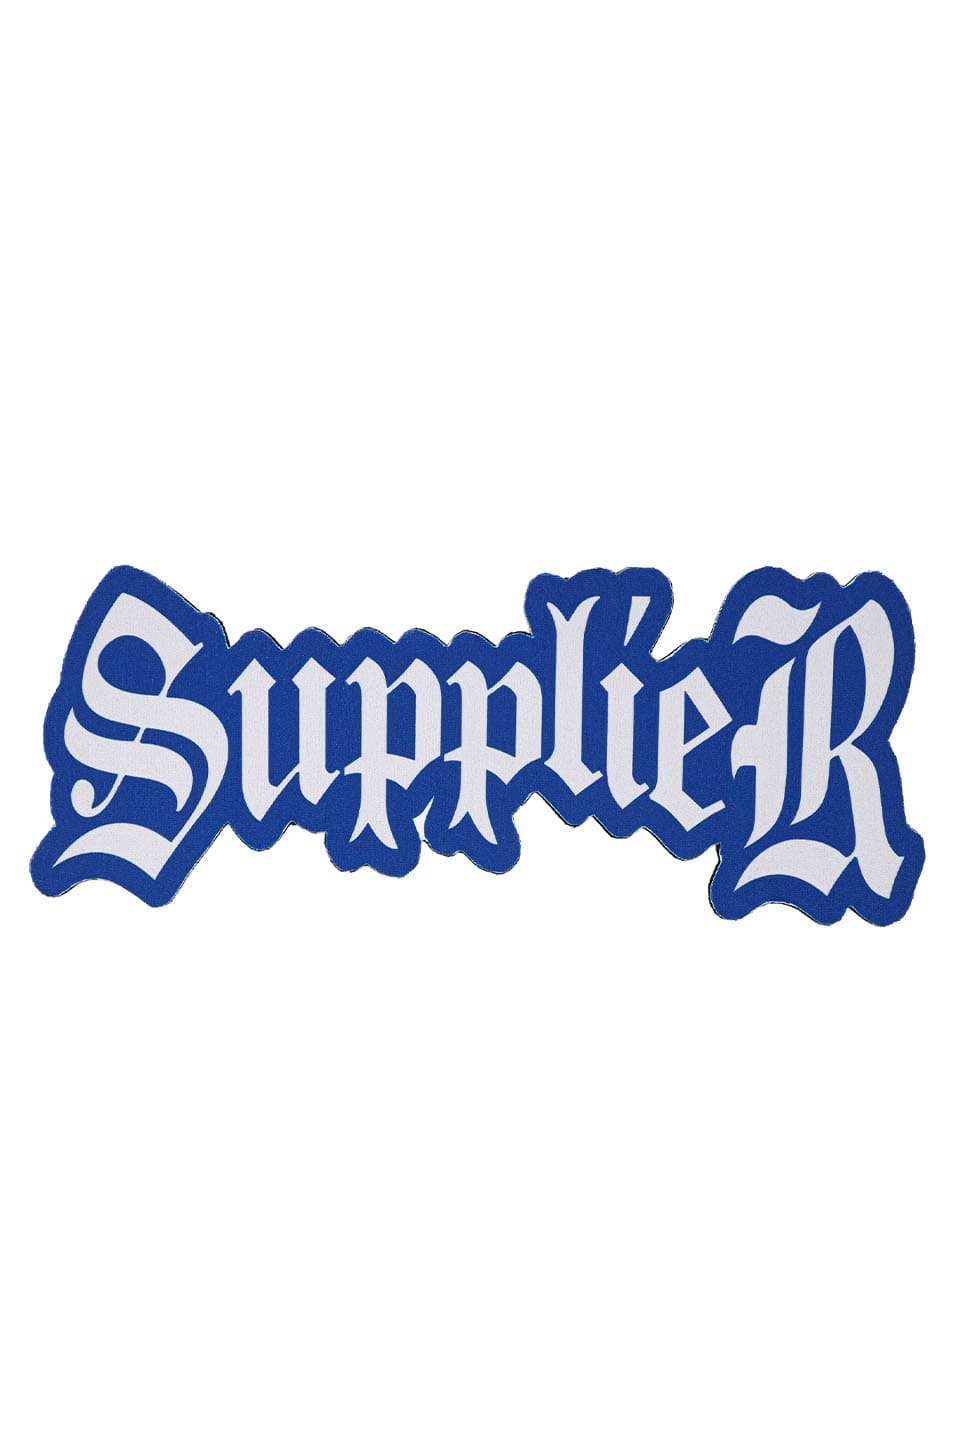 Supplier Logo Rug